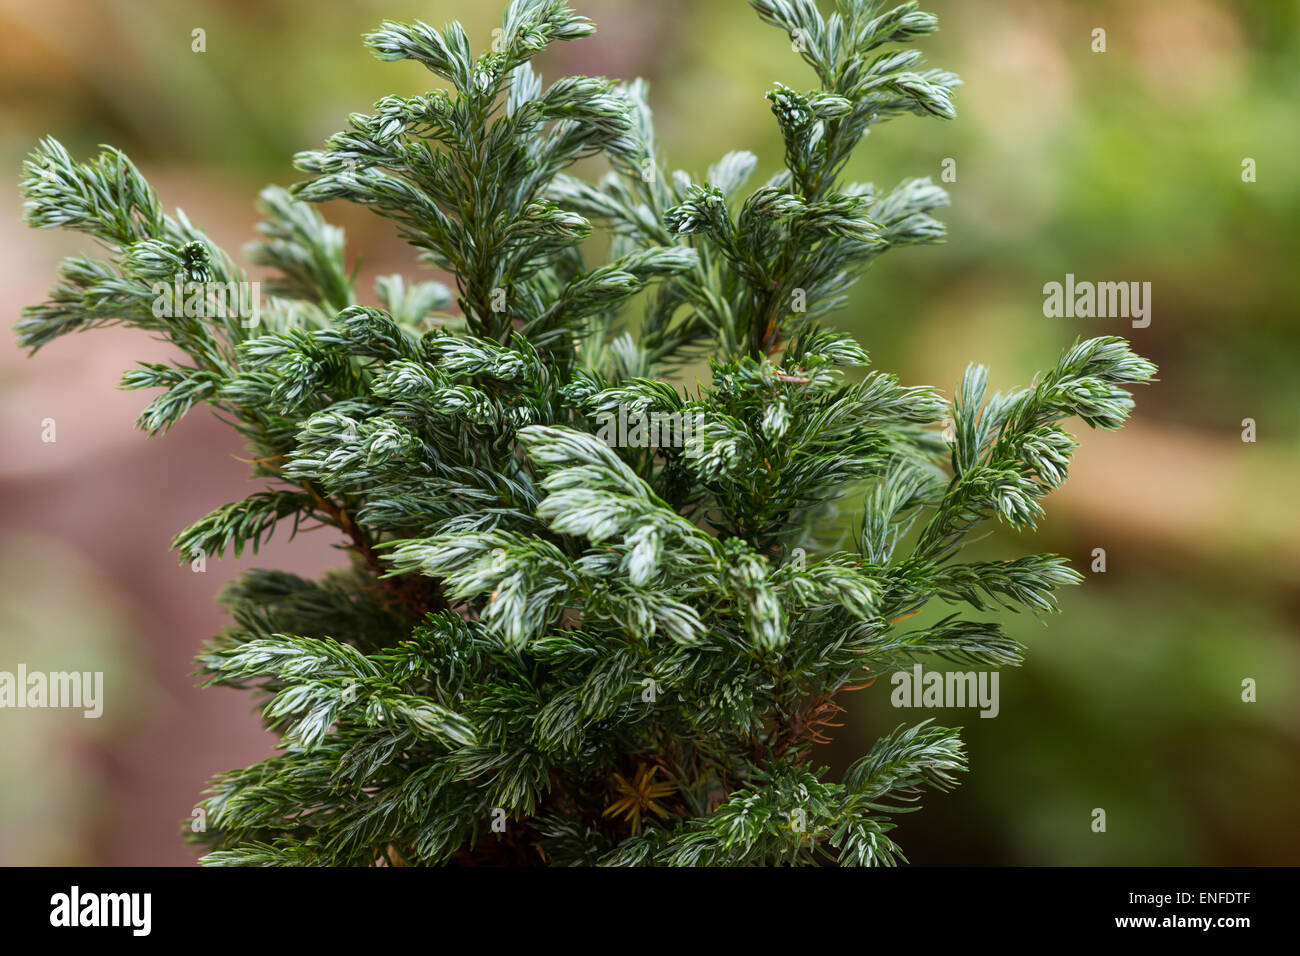 Mousse bleu (Cypress Chamaecyparis pisifera 'Boulevard' - Cyprès Sawara) plante arbre sur fond naturel Banque D'Images